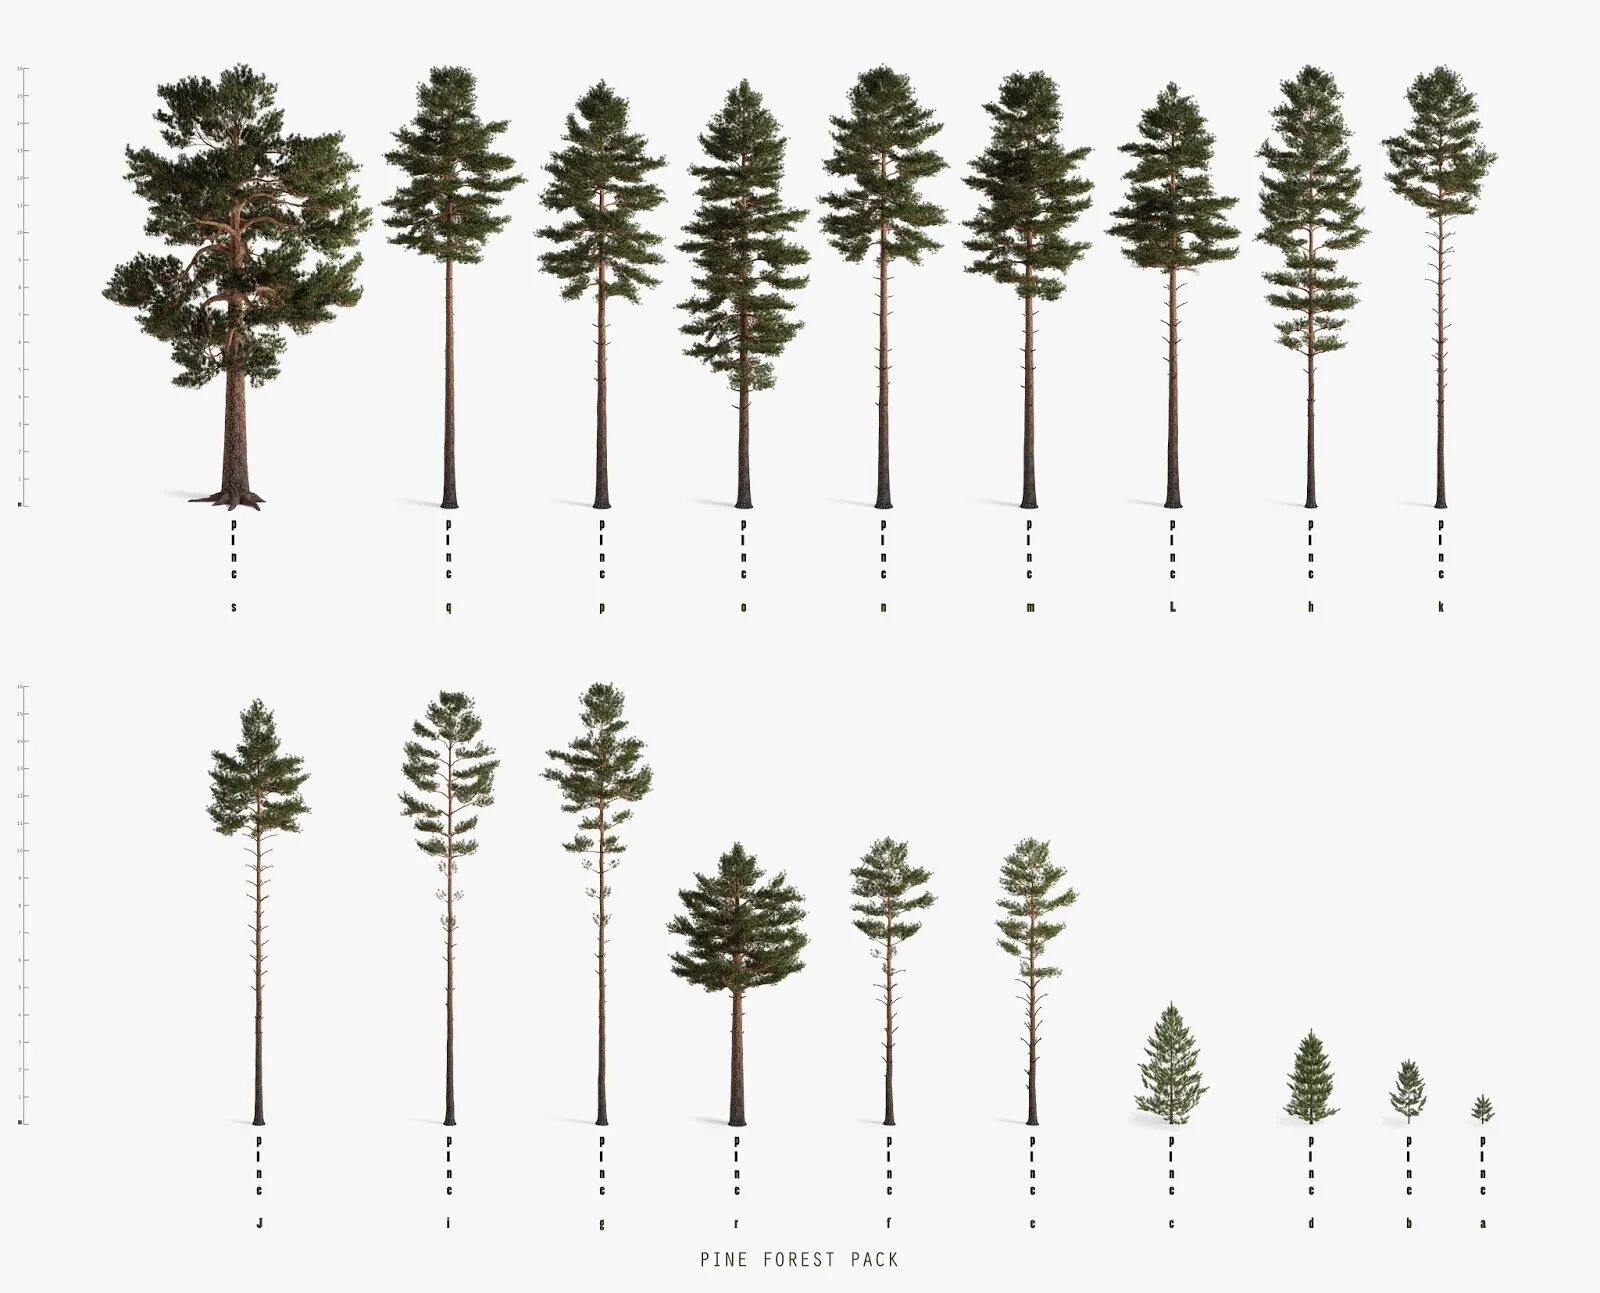 Forest Pack. Pine Forest Pack. Forest Pine arch1t3ct, альбом Forest Pine. Sporagine Pine.